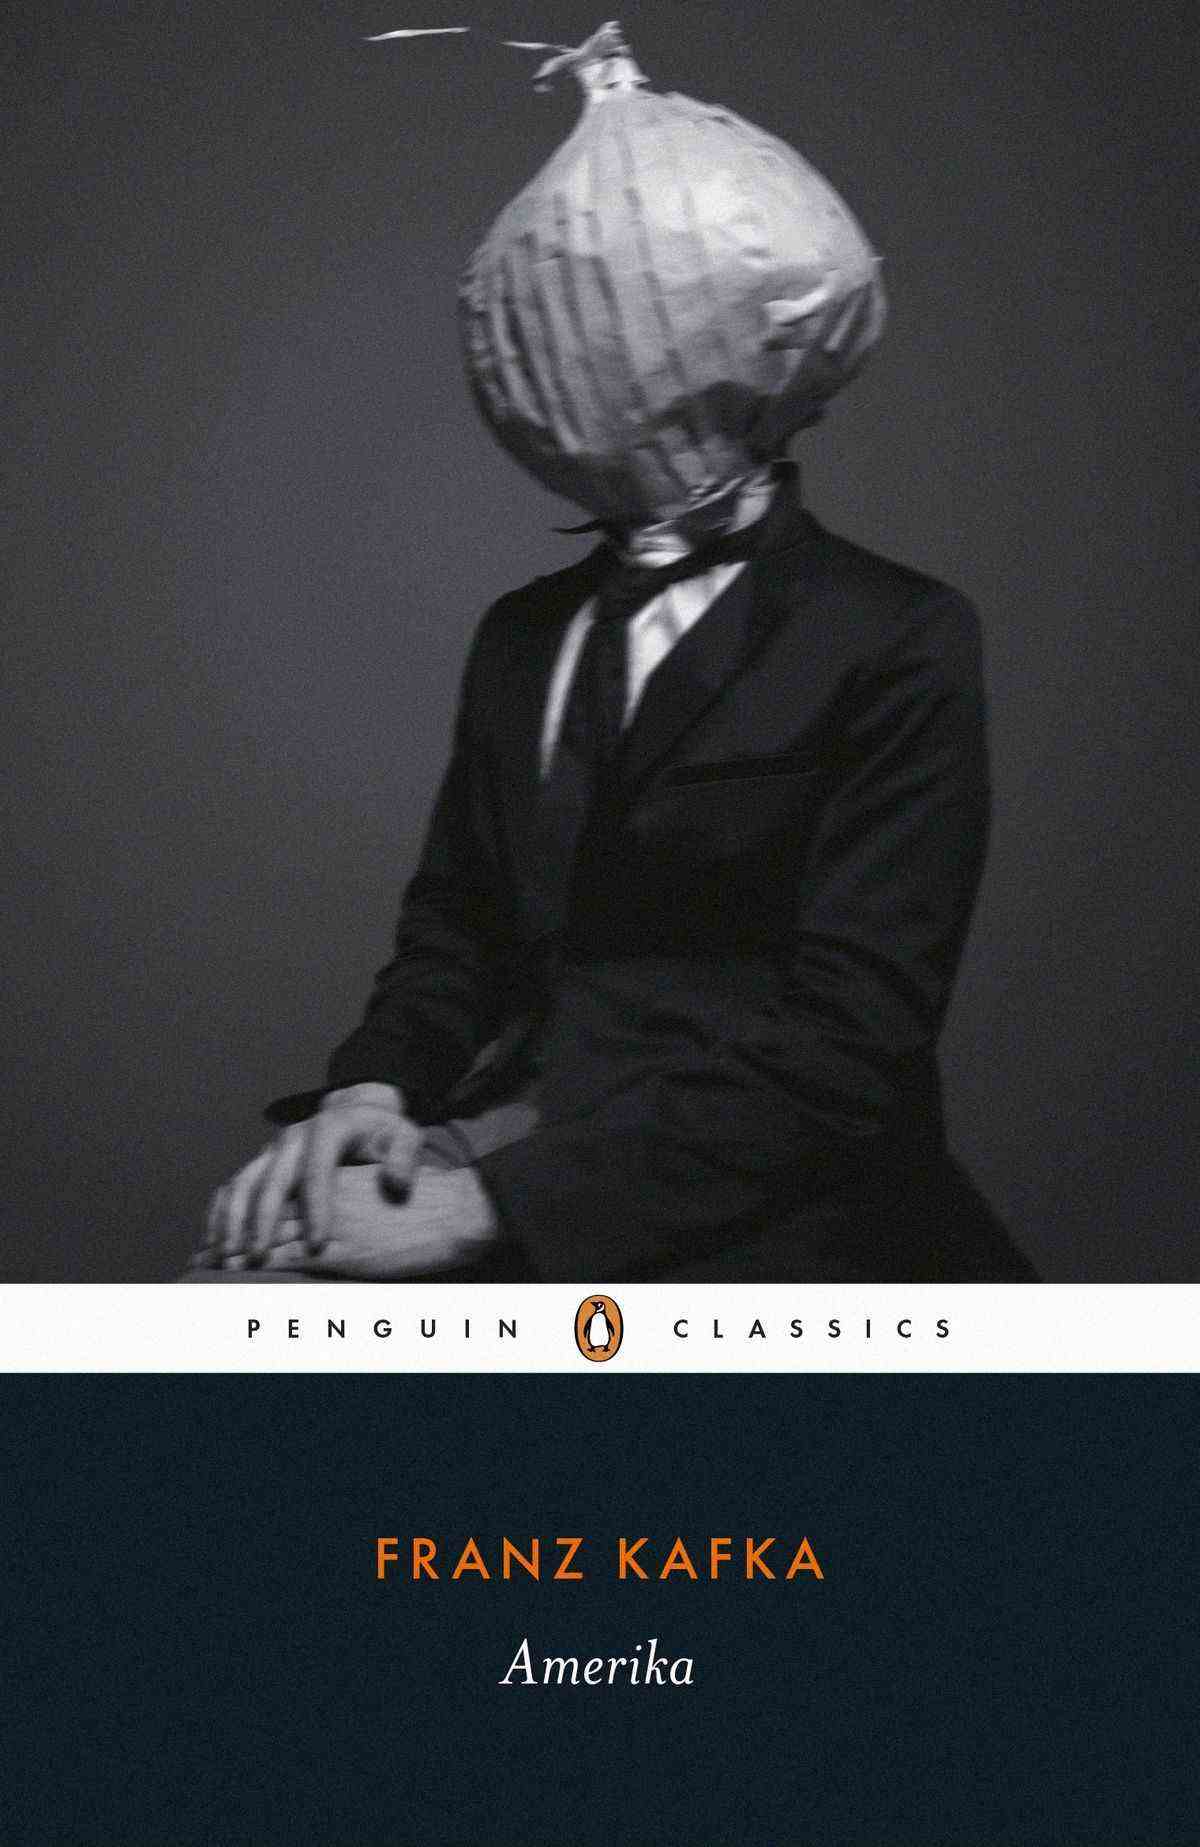 Couverture Amerika de Franz Kafka avec un homme à tête d'oignon